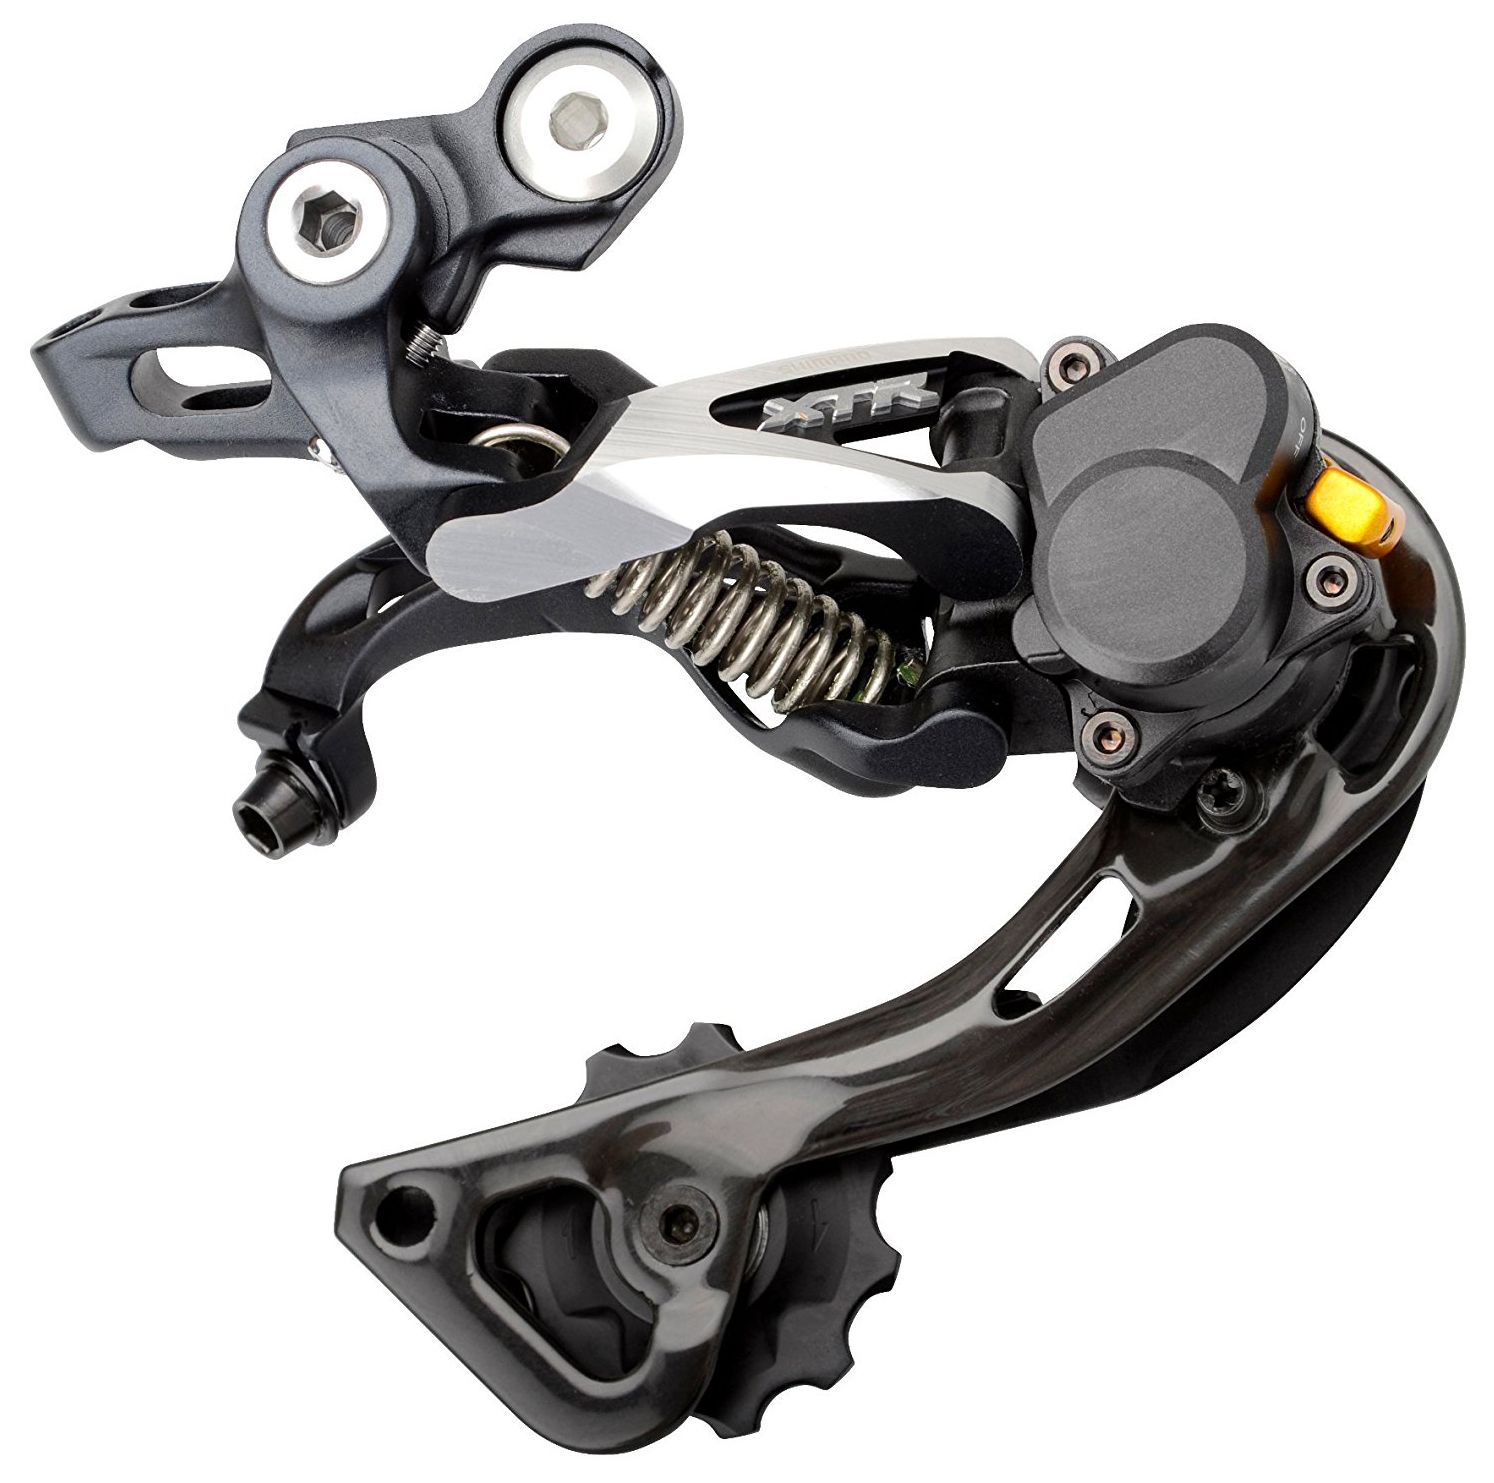  Переключатель задний для велосипеда Shimano XTR M986 (IRDM986GS)